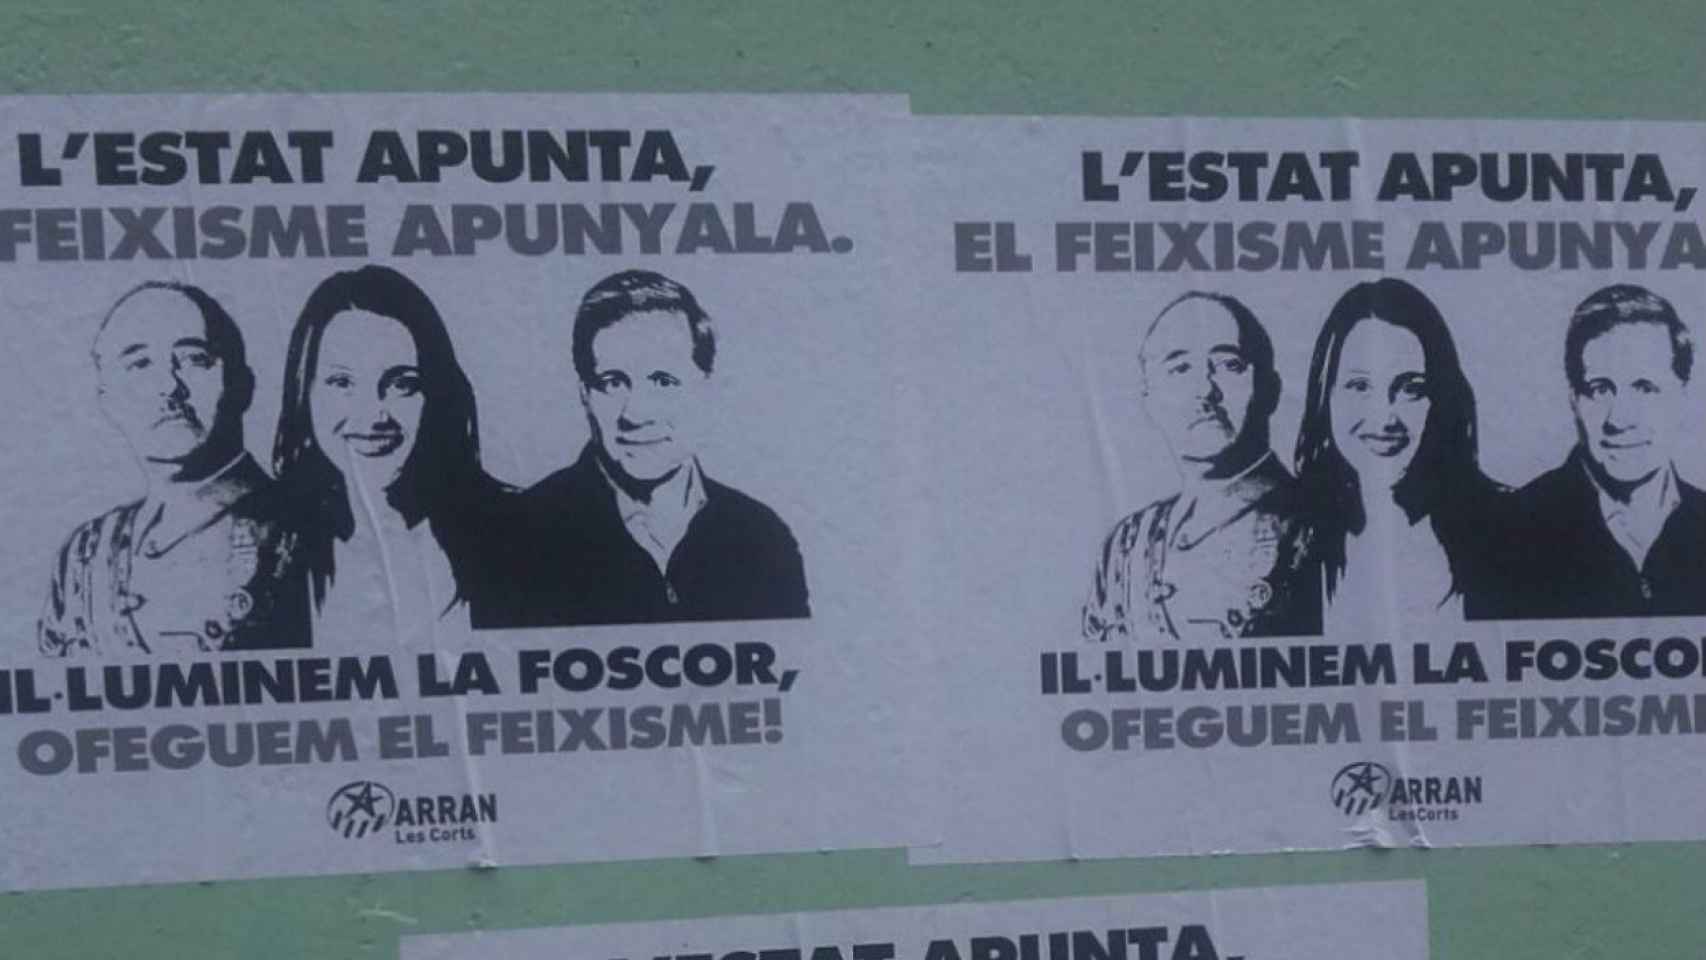 Los radicales de Arran han llenado el distrito de Les Corts de carteles y pancartas intimidatorios contra Inés Arrimadas y Alberto Fernández / PP